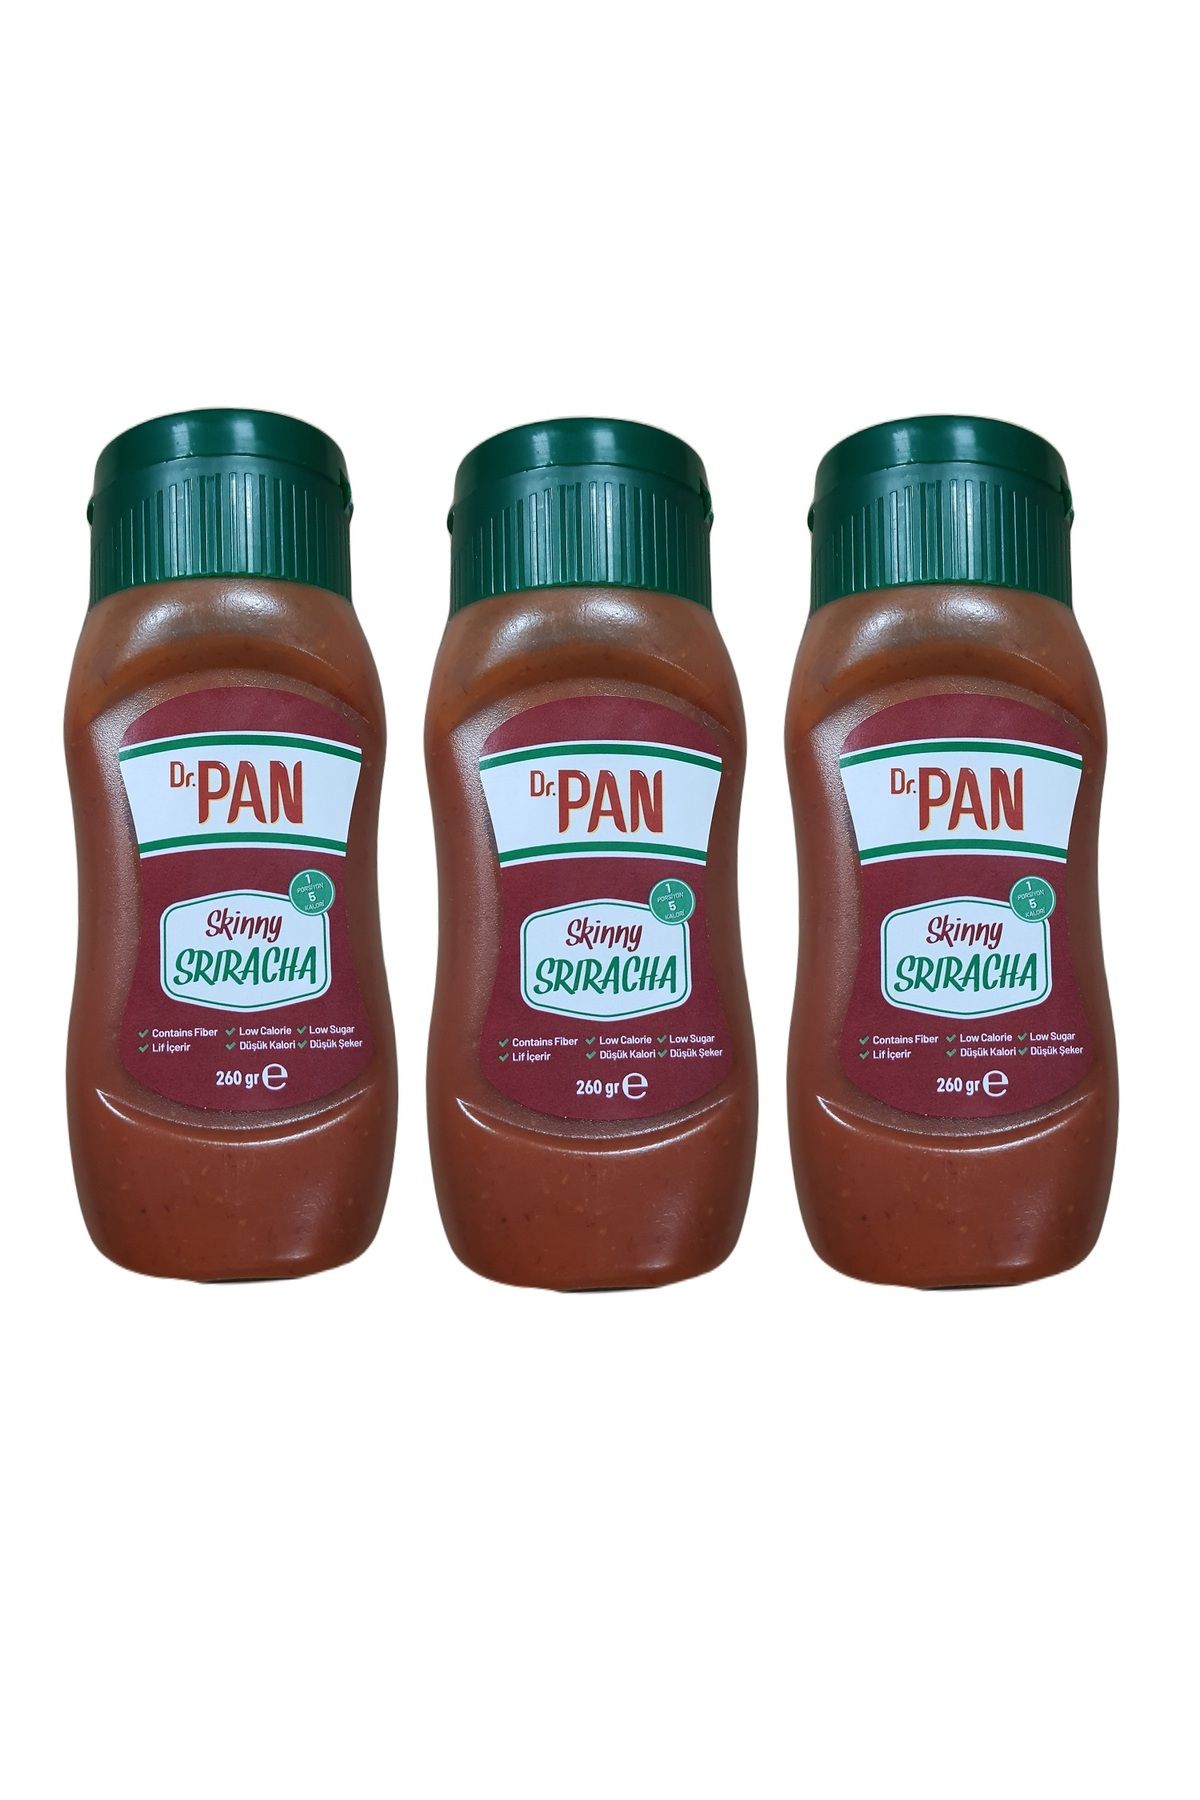 Dr Pan Şekersiz Sriracha Sos Düşük Kalorili 260g 3 Adet